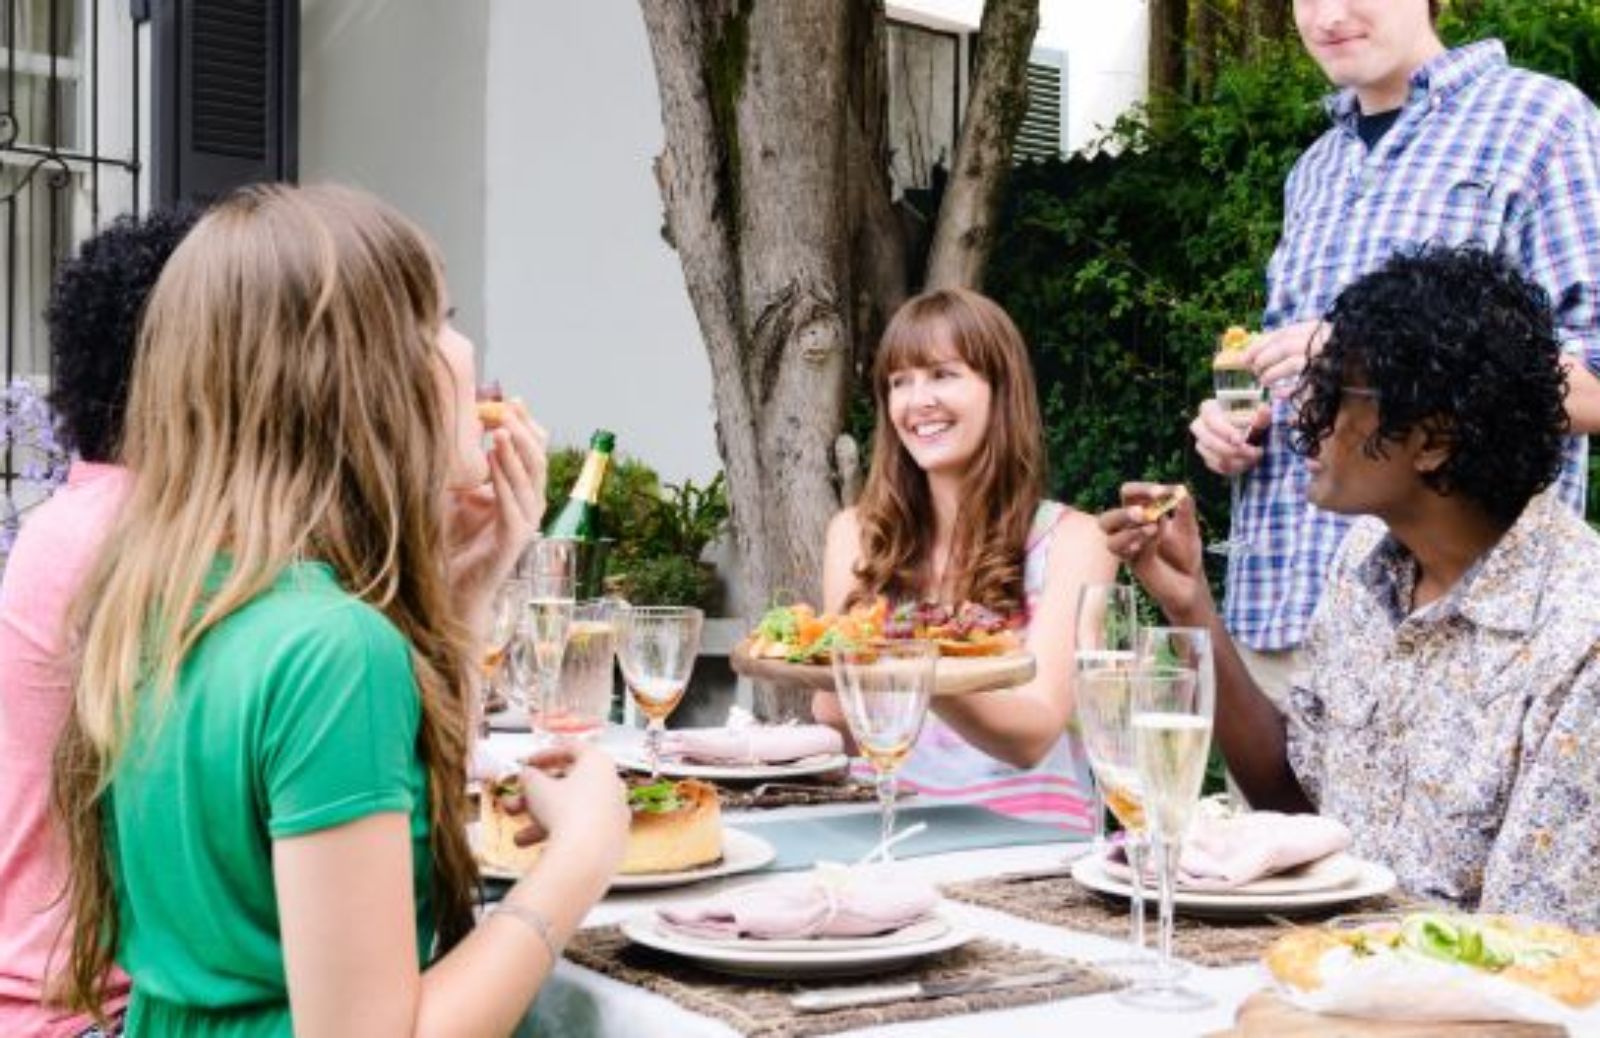 Galateo e buone maniere: il pranzo con gli amici